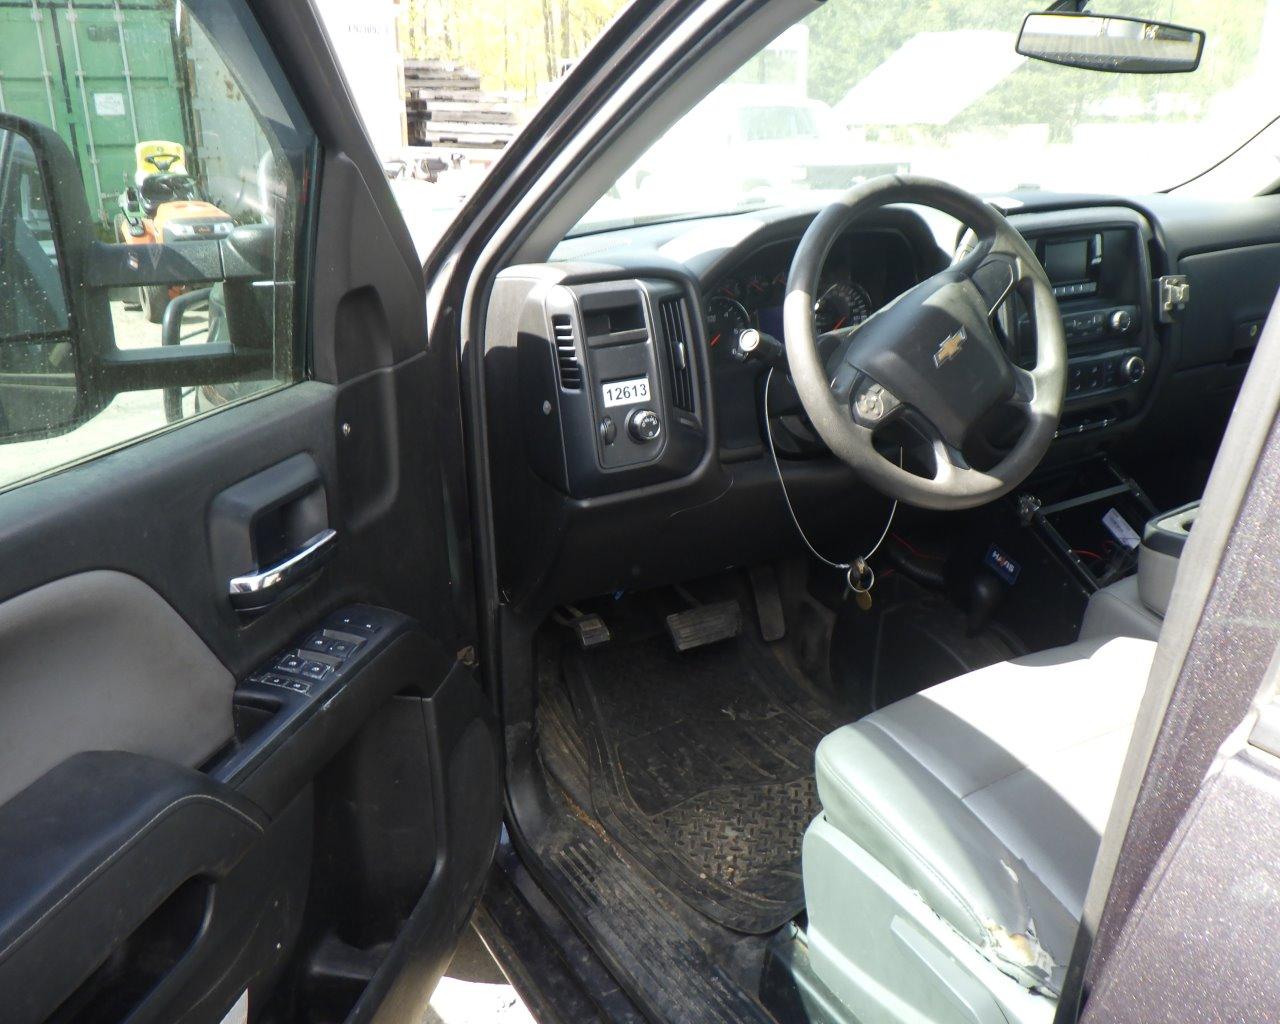 2014 Chevrolet Silverado Ext Cab   w/Tool Box   4x4 s/n:342006